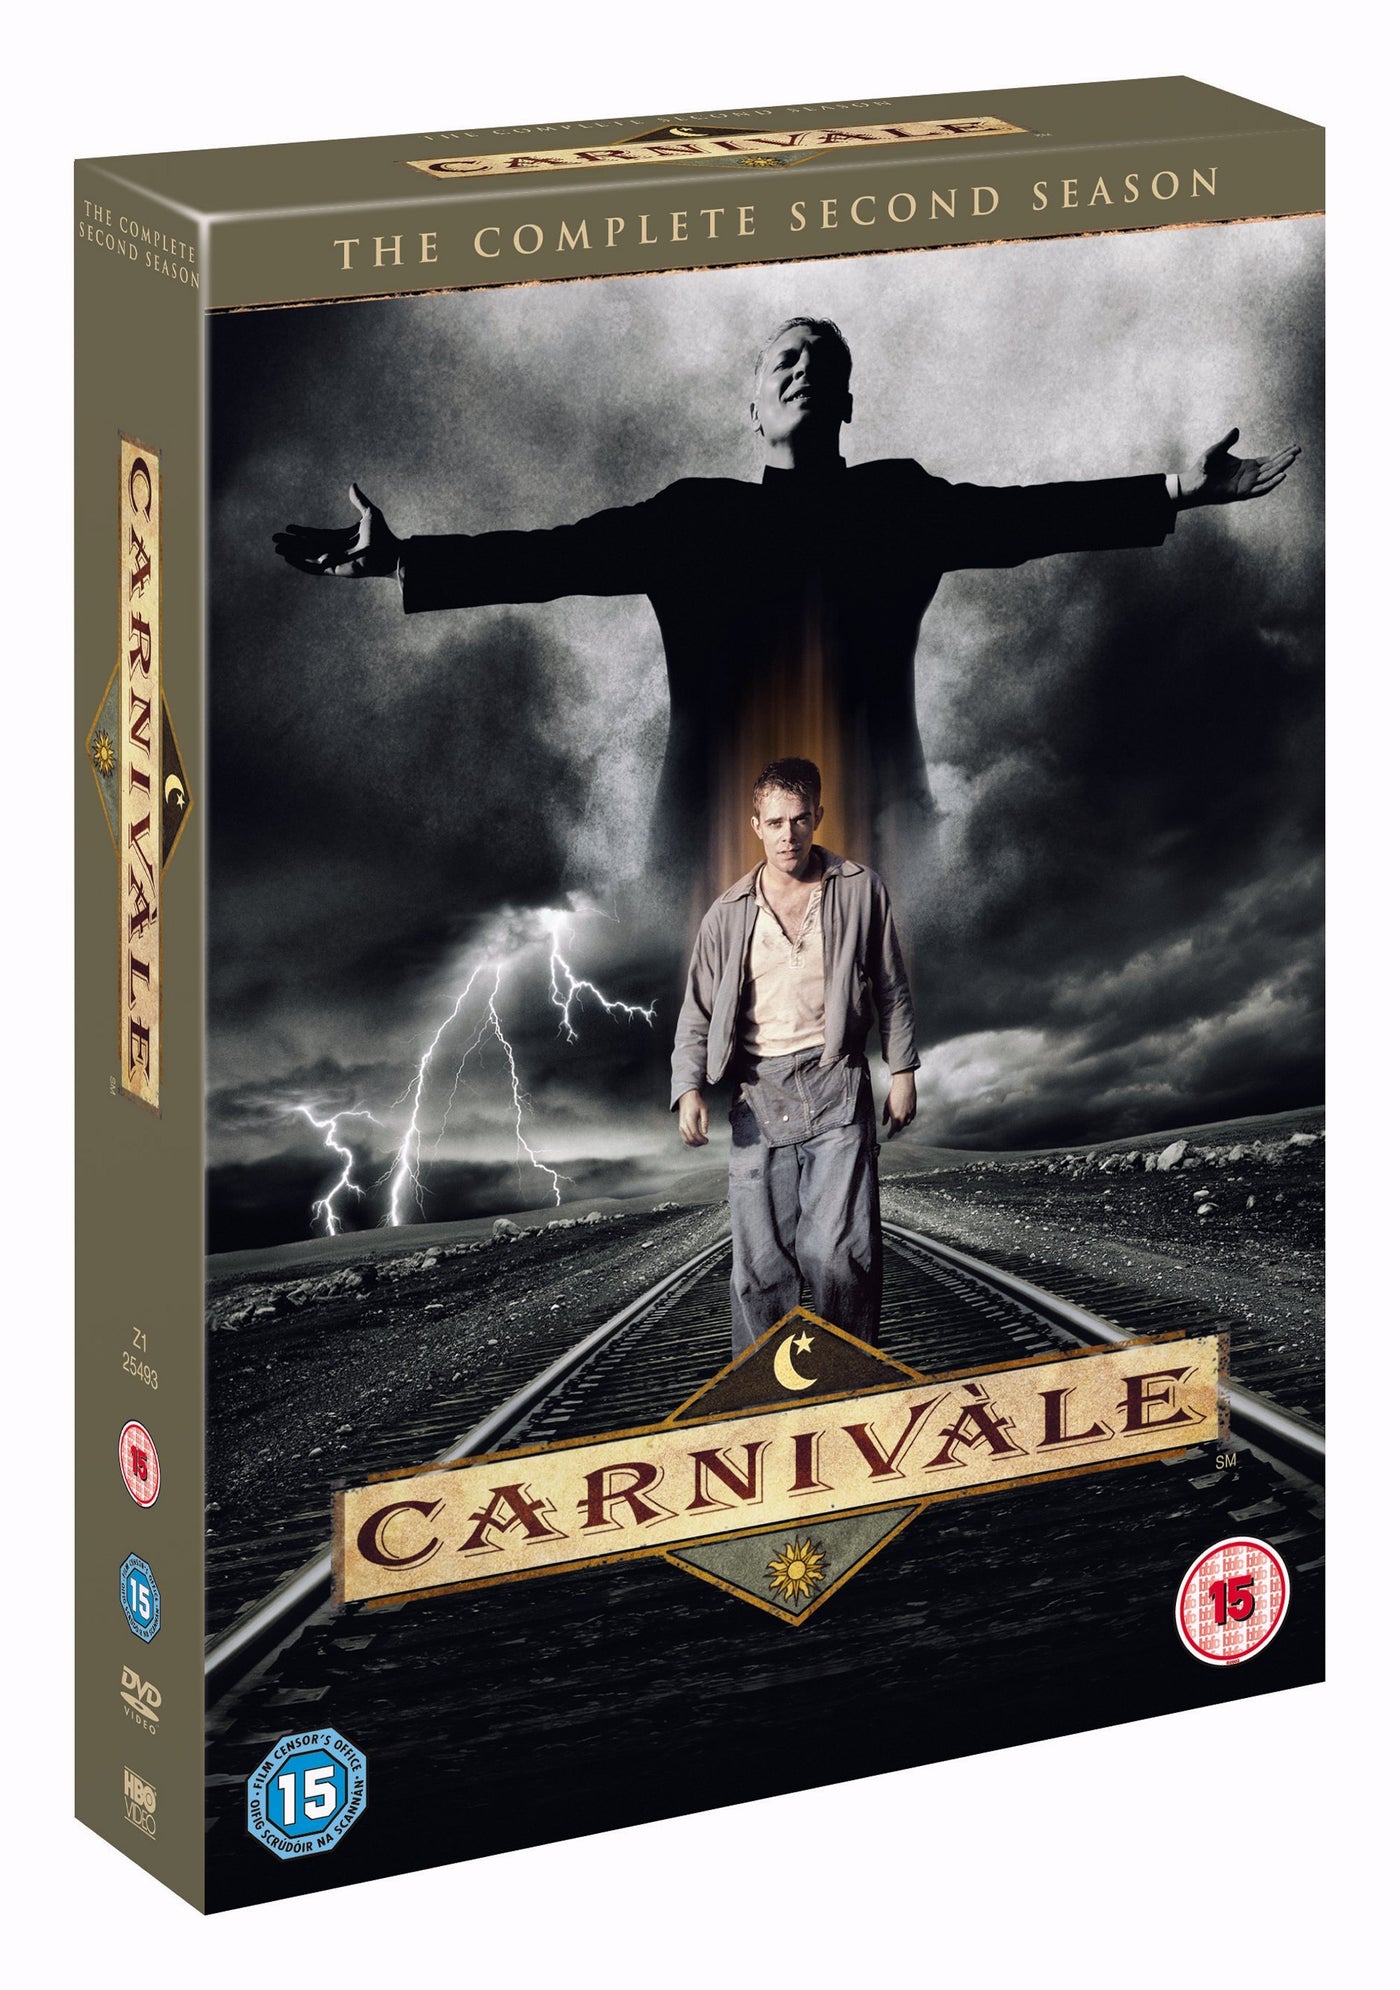 CARNIVALES2(DVD/S)